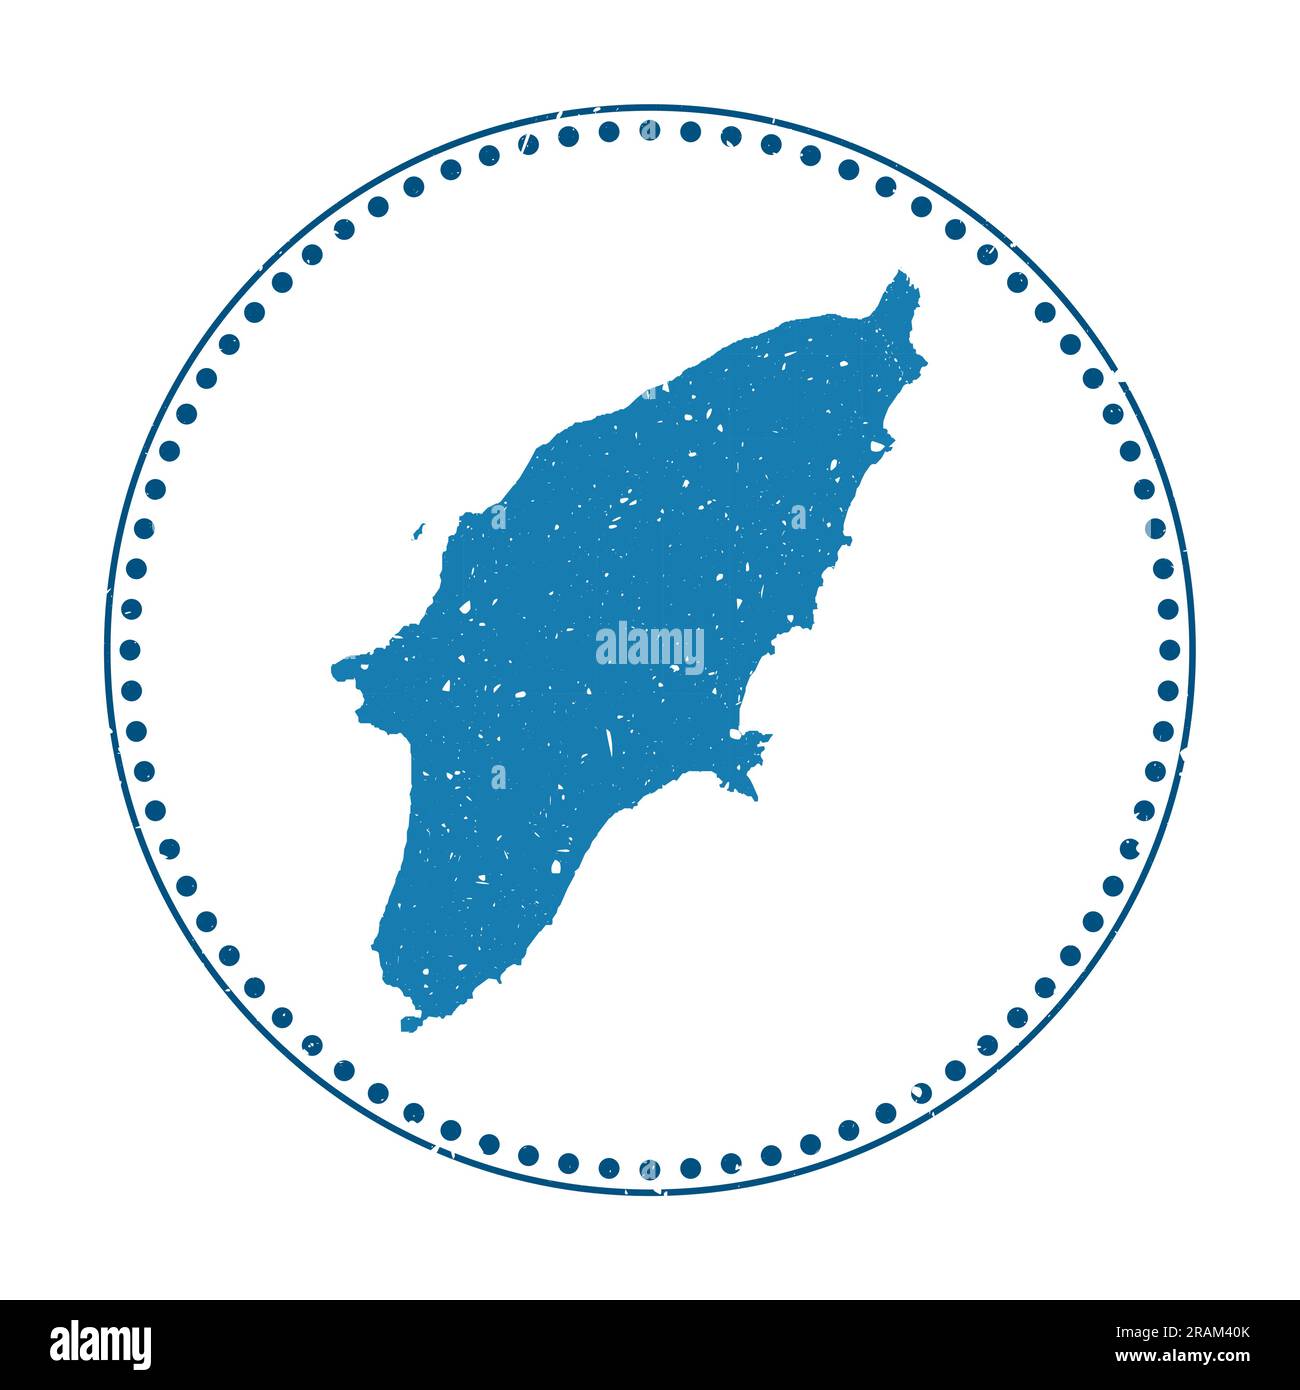 Adesivo Rhodes. Timbro di gomma con mappa dell'isola, illustrazione vettoriale. Può essere utilizzato come insegna, logotipo, etichetta, adesivo o badge di Rhodes. Illustrazione Vettoriale